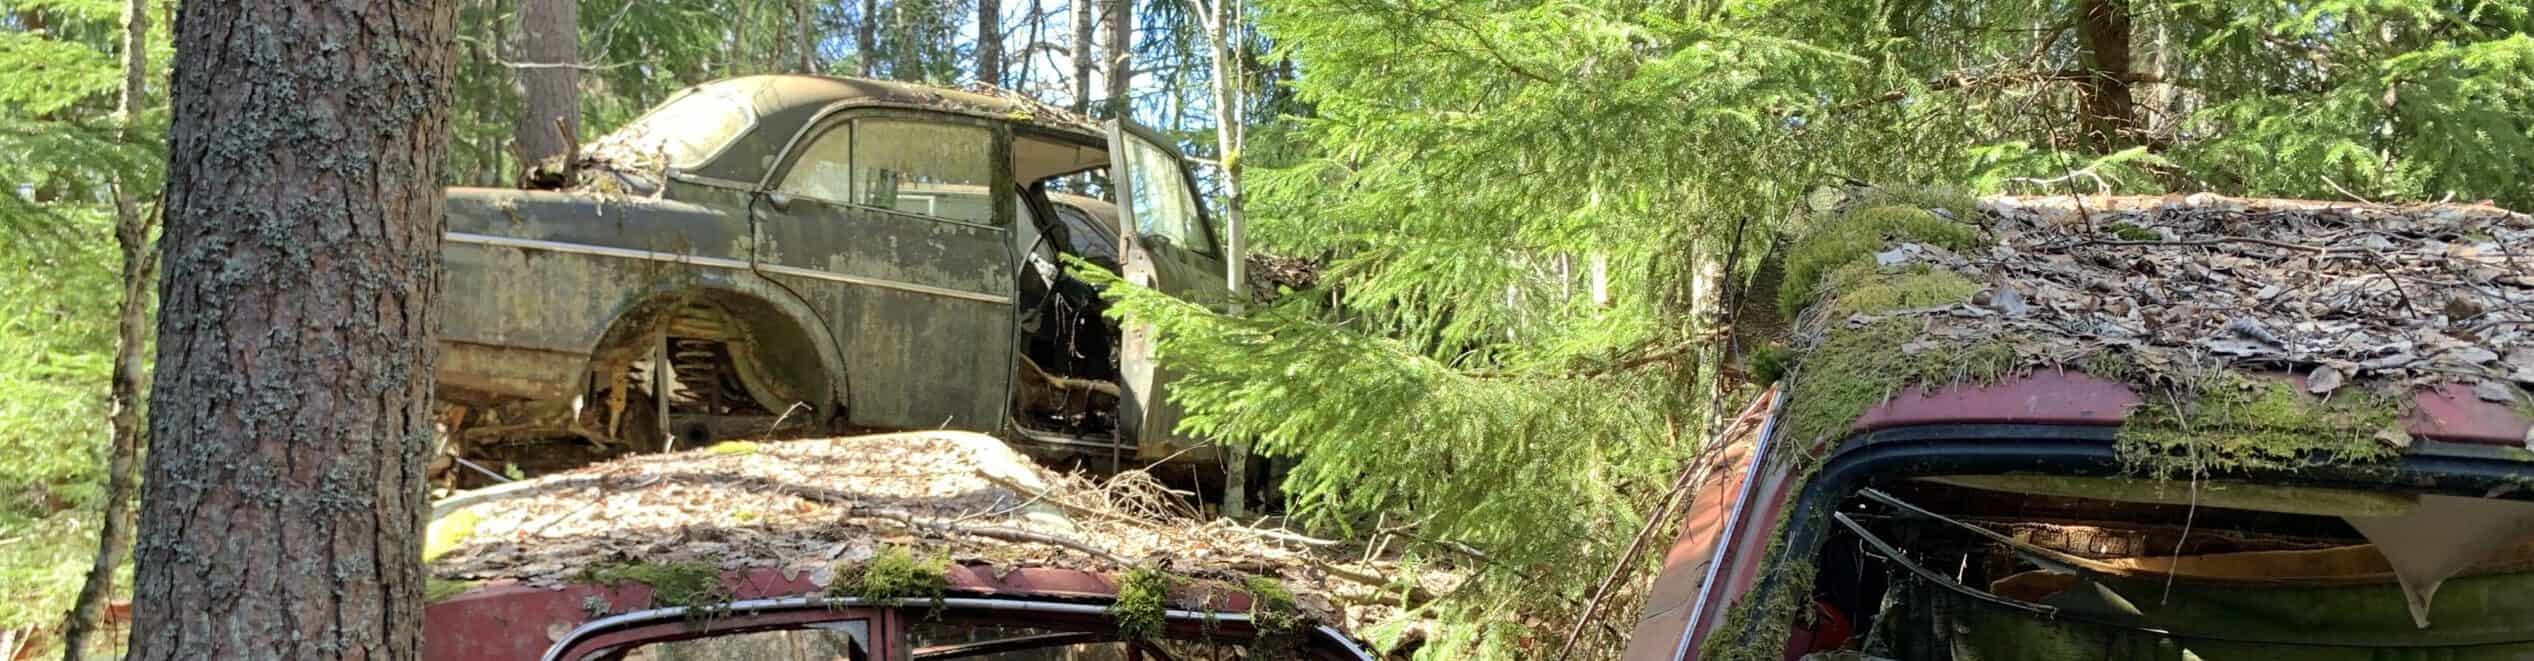 Undvik bilskrot efter besiktning i Sjömarken